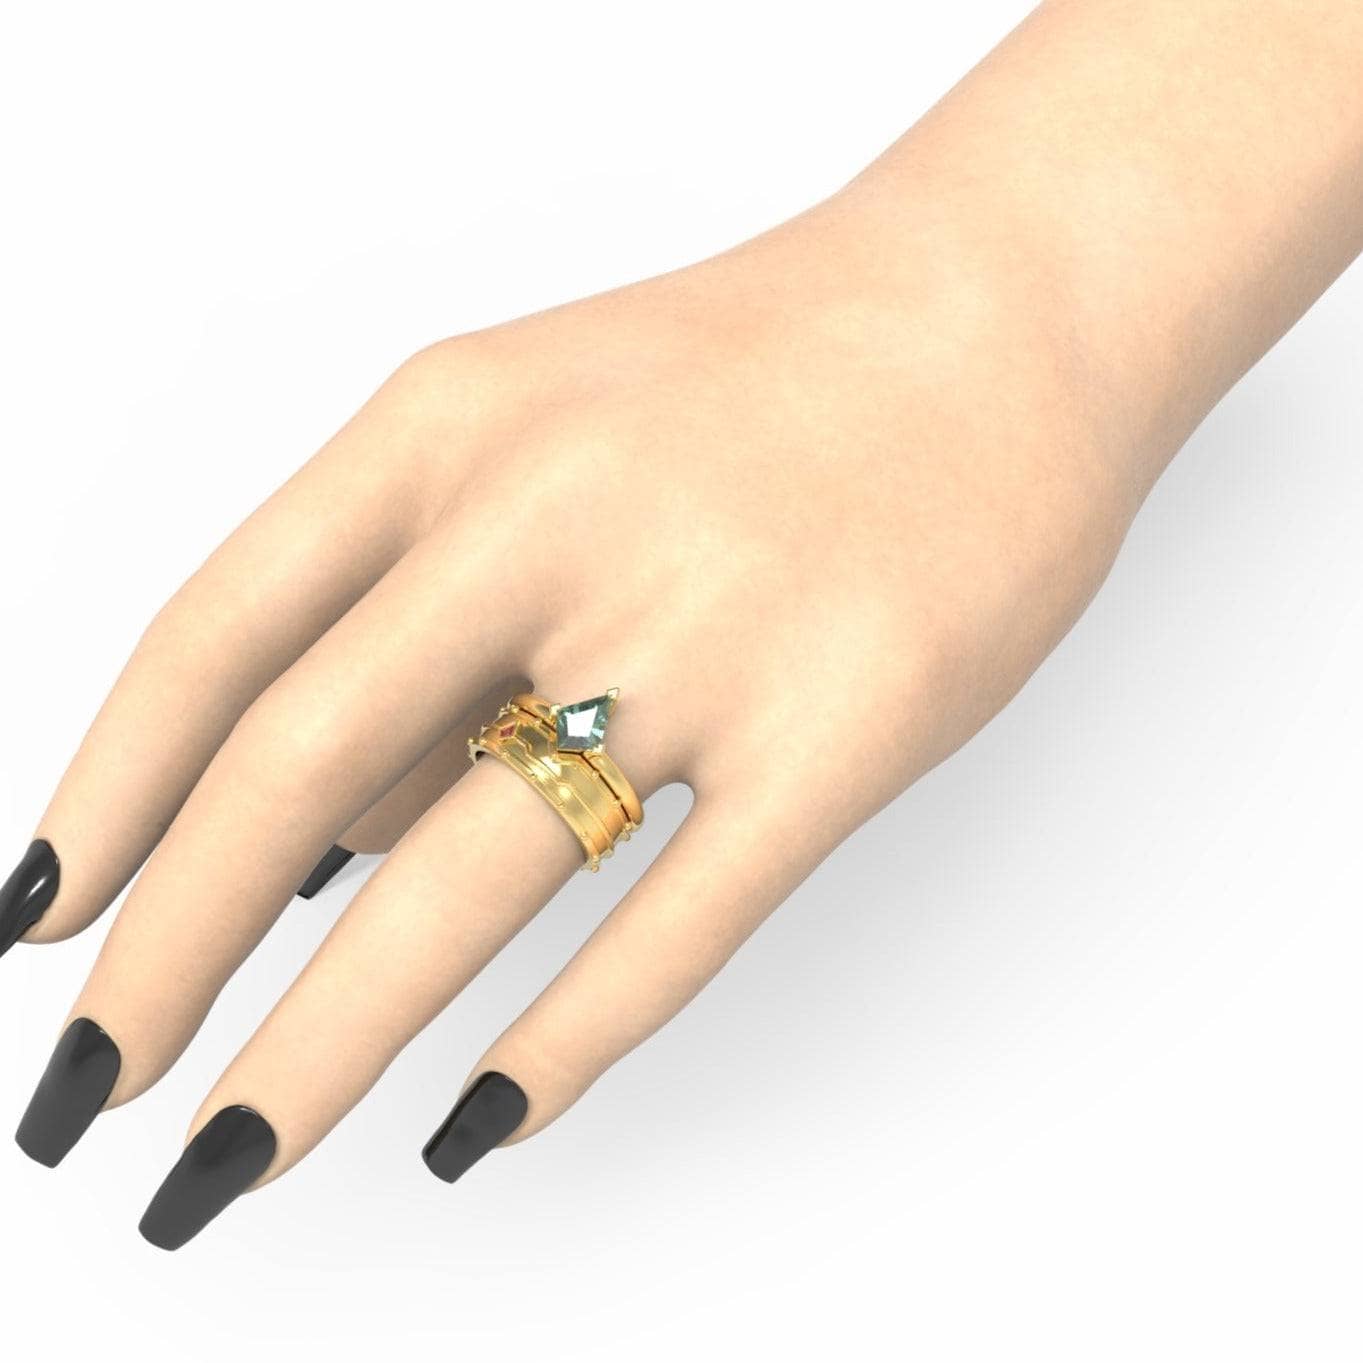 Assasin's Promise Ring Set (Women)- 14k Yellow Gold Video Game Inspired Rings-Black Diamonds New York